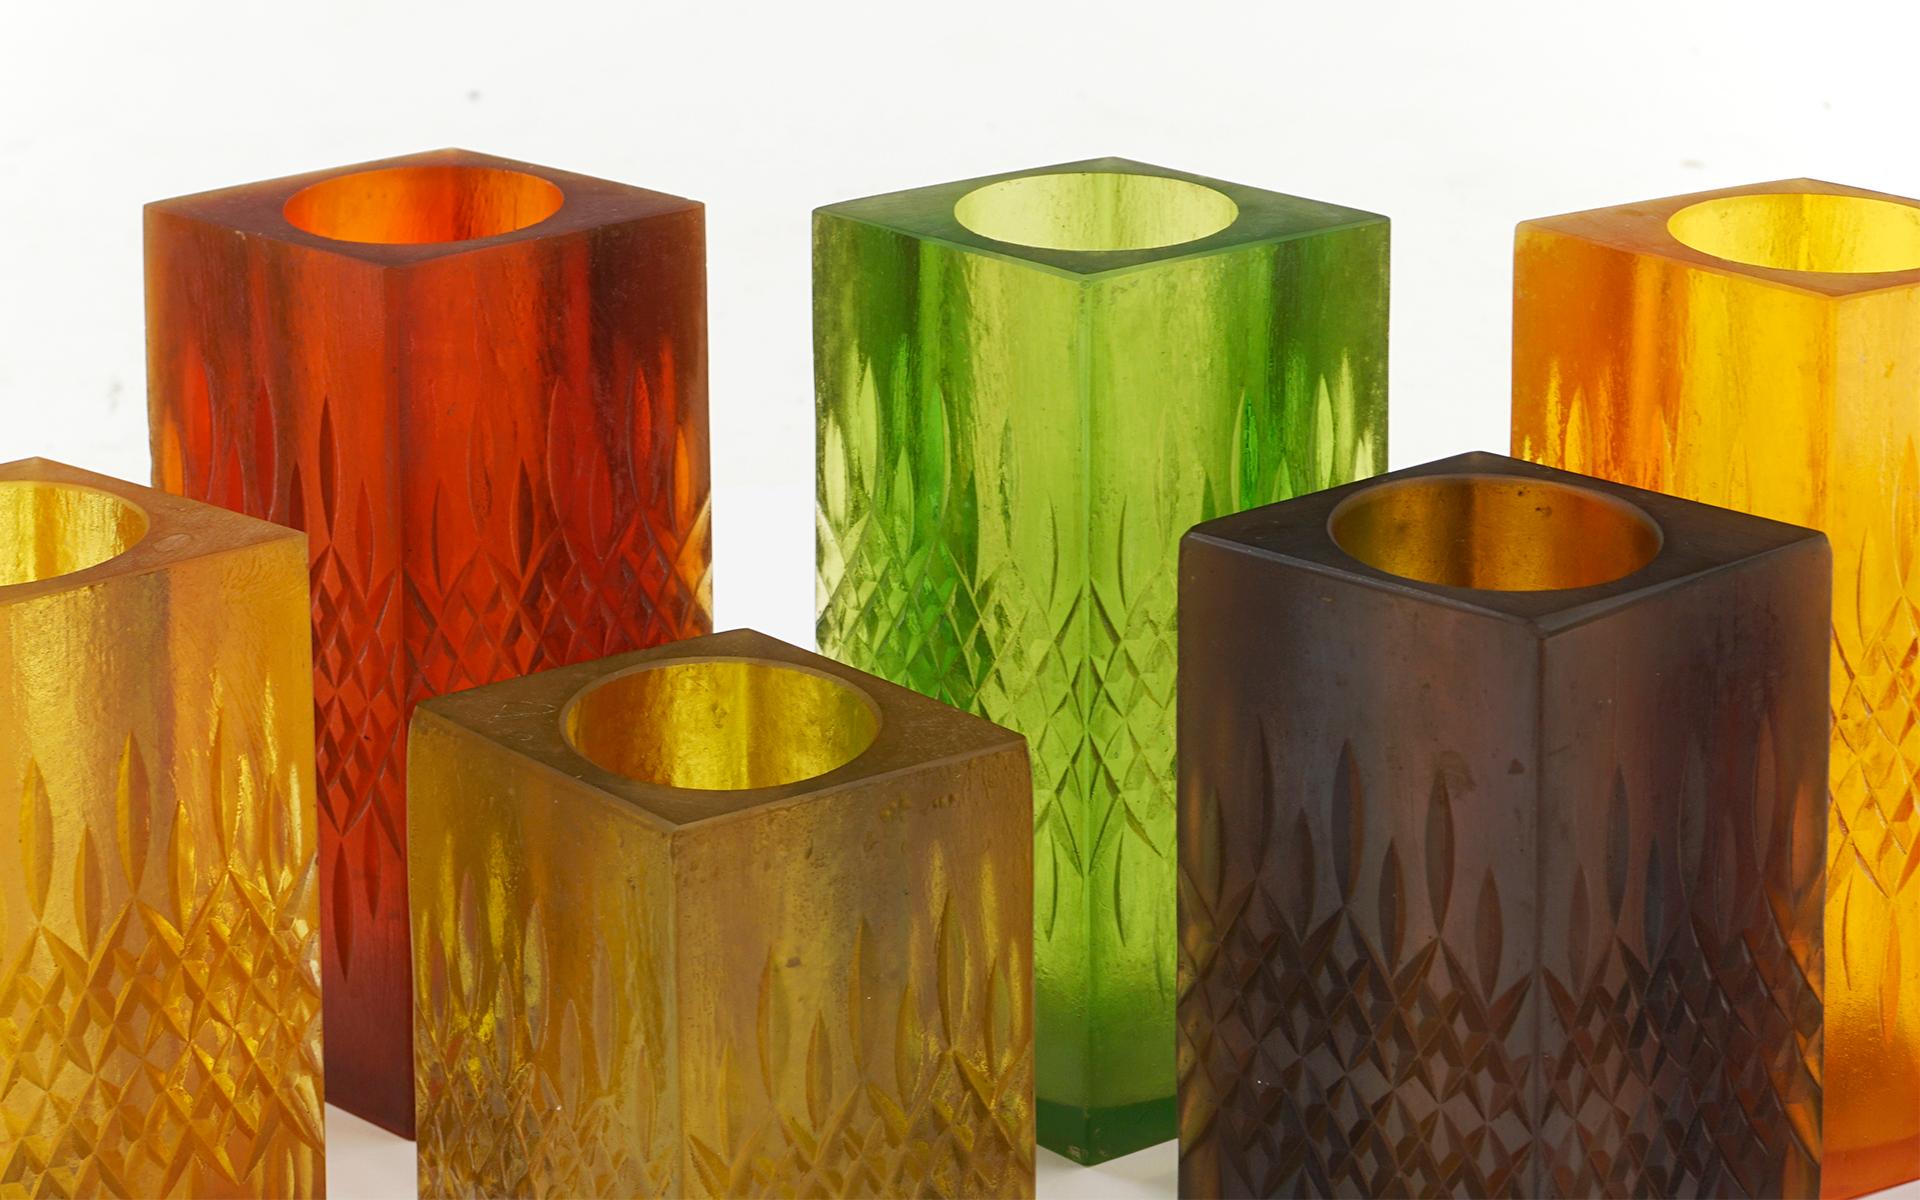 Ensemble de neuf chandeliers / vases en résine multicolore de Sascha Brastoff, signés 1